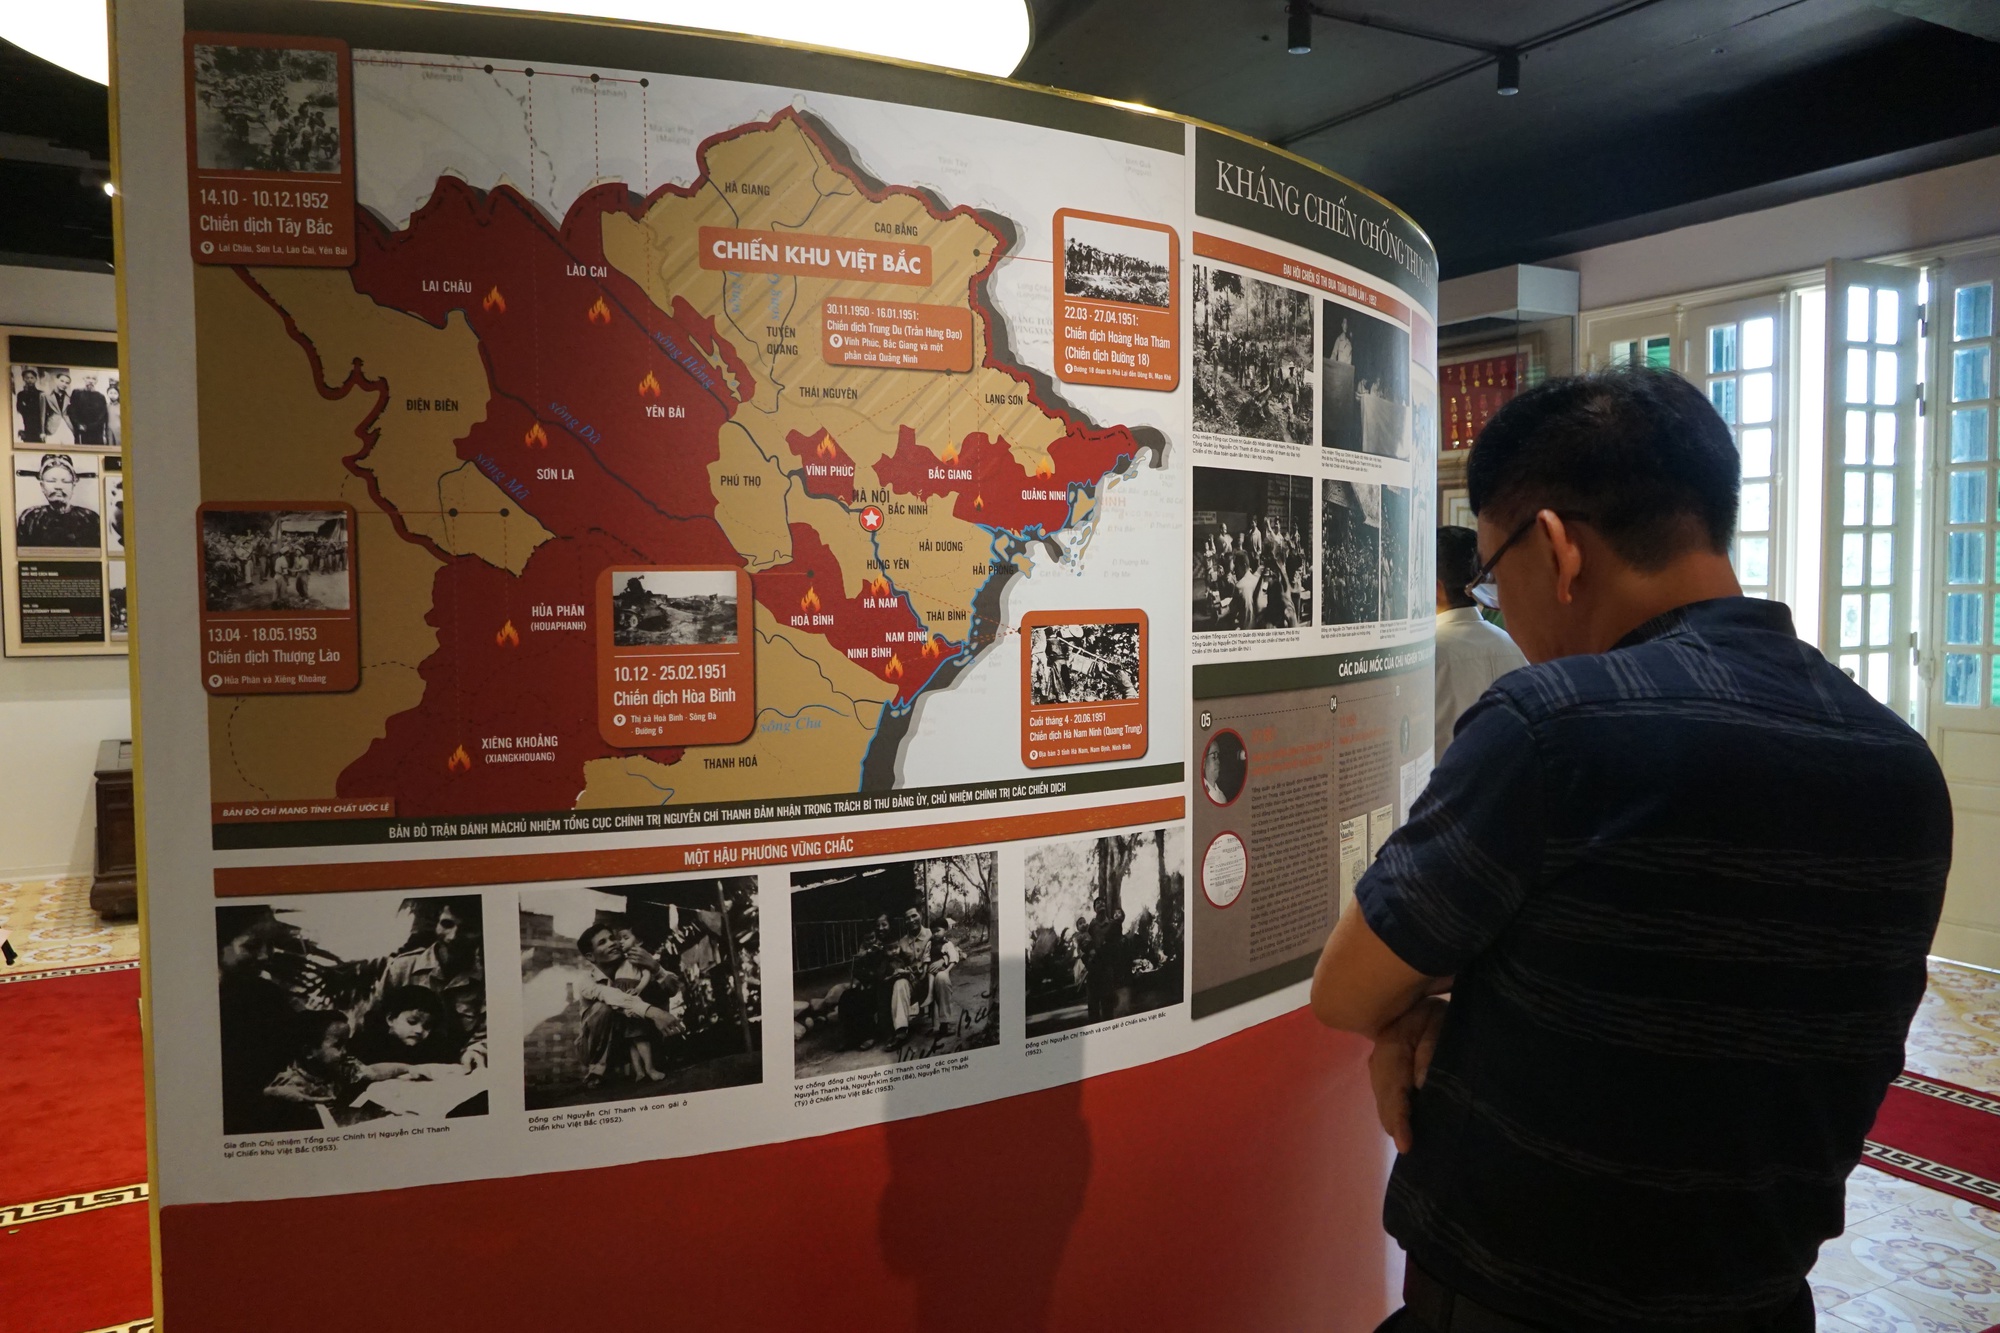 Bảo tàng Đại tướng Nguyễn Chí Thanh tại Hà Nội mở cửa đón khách tham quan thử nghiệm - Ảnh 8.